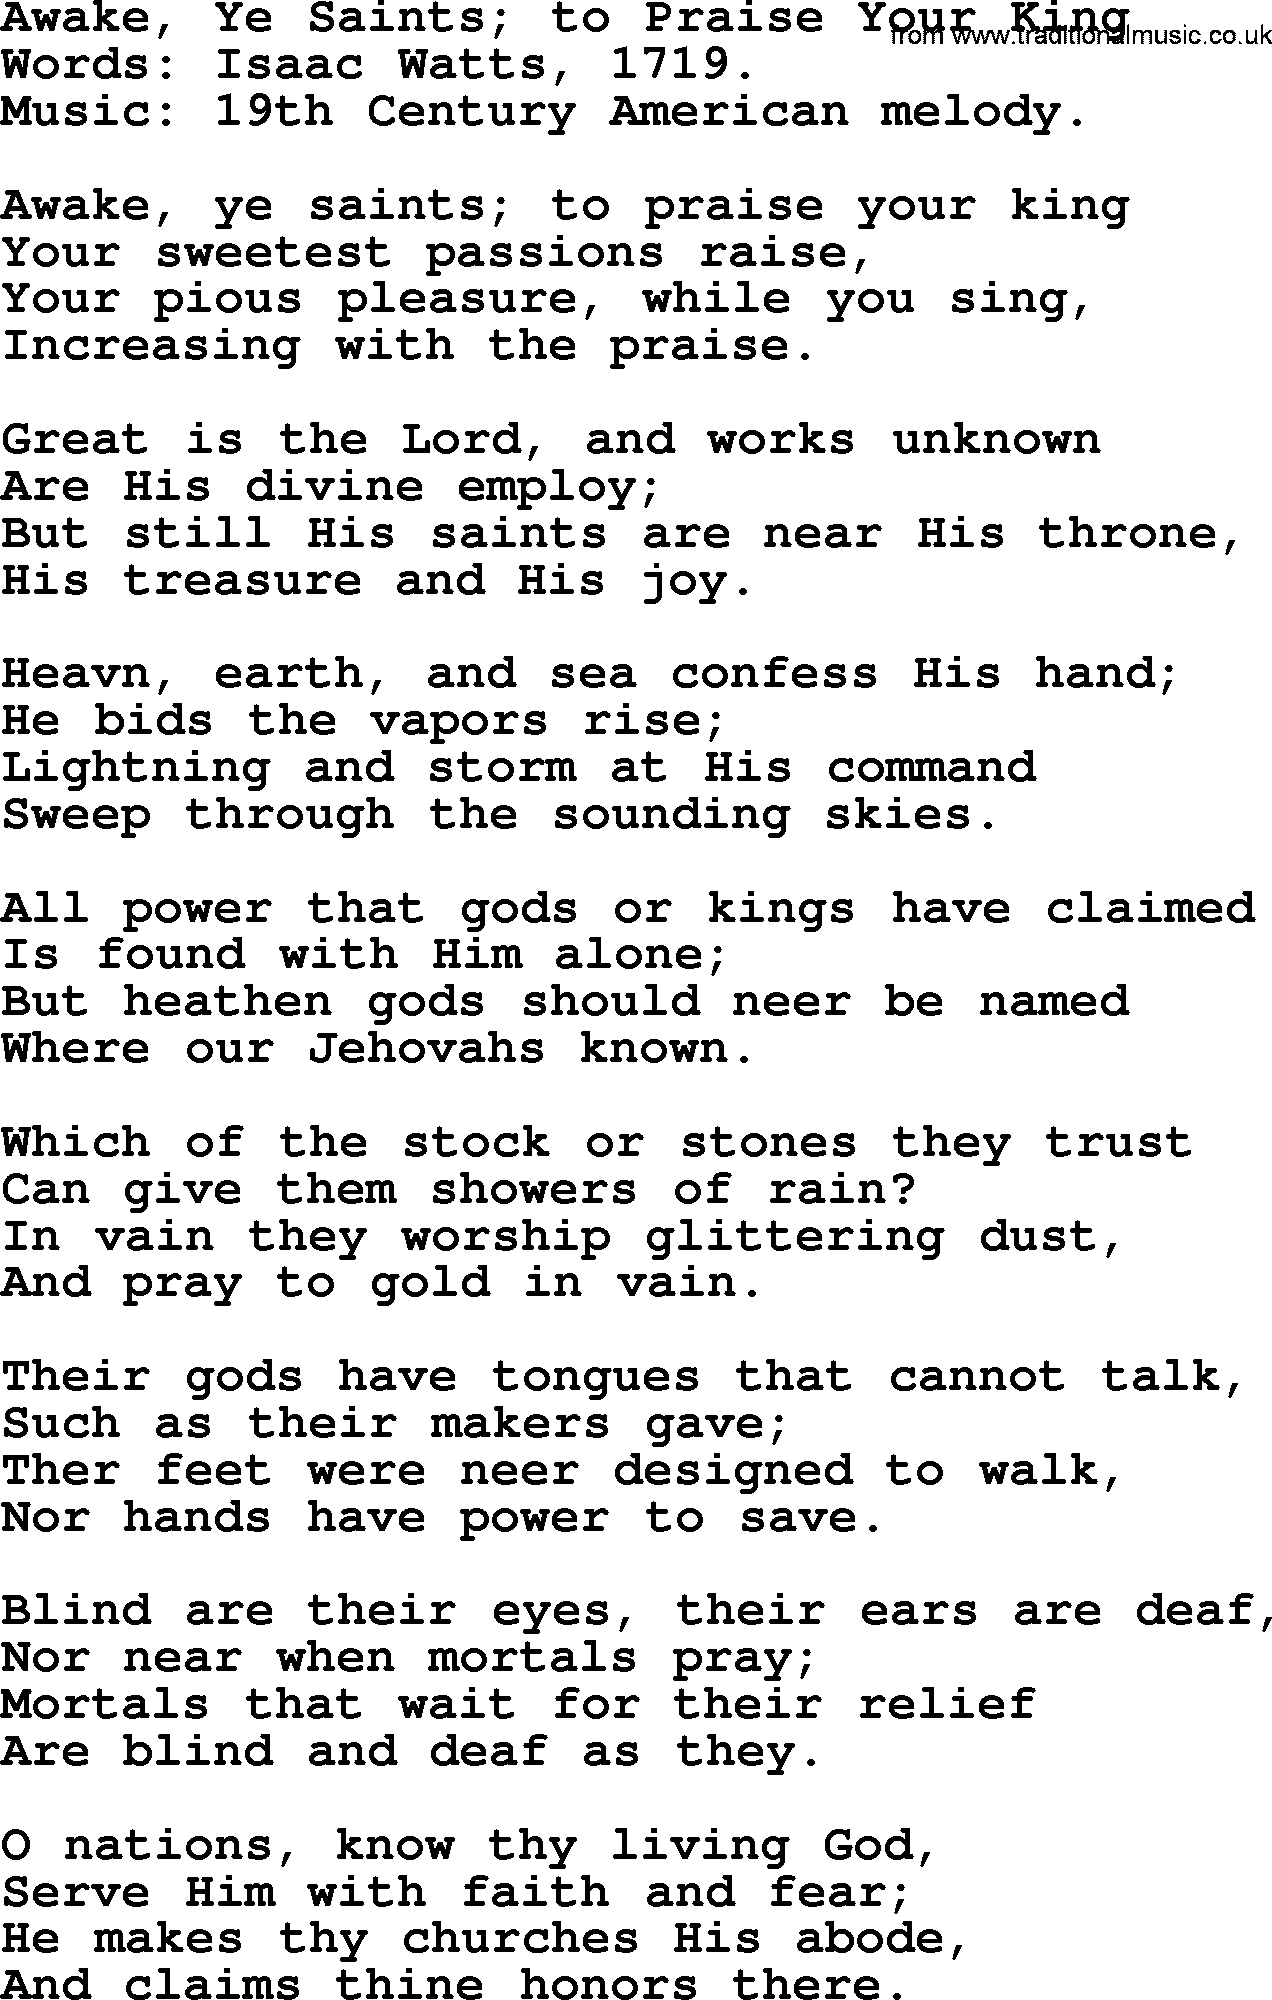 Isaac Watts Christian hymn: Awake, Ye Saints; to Praise Your King- lyricss